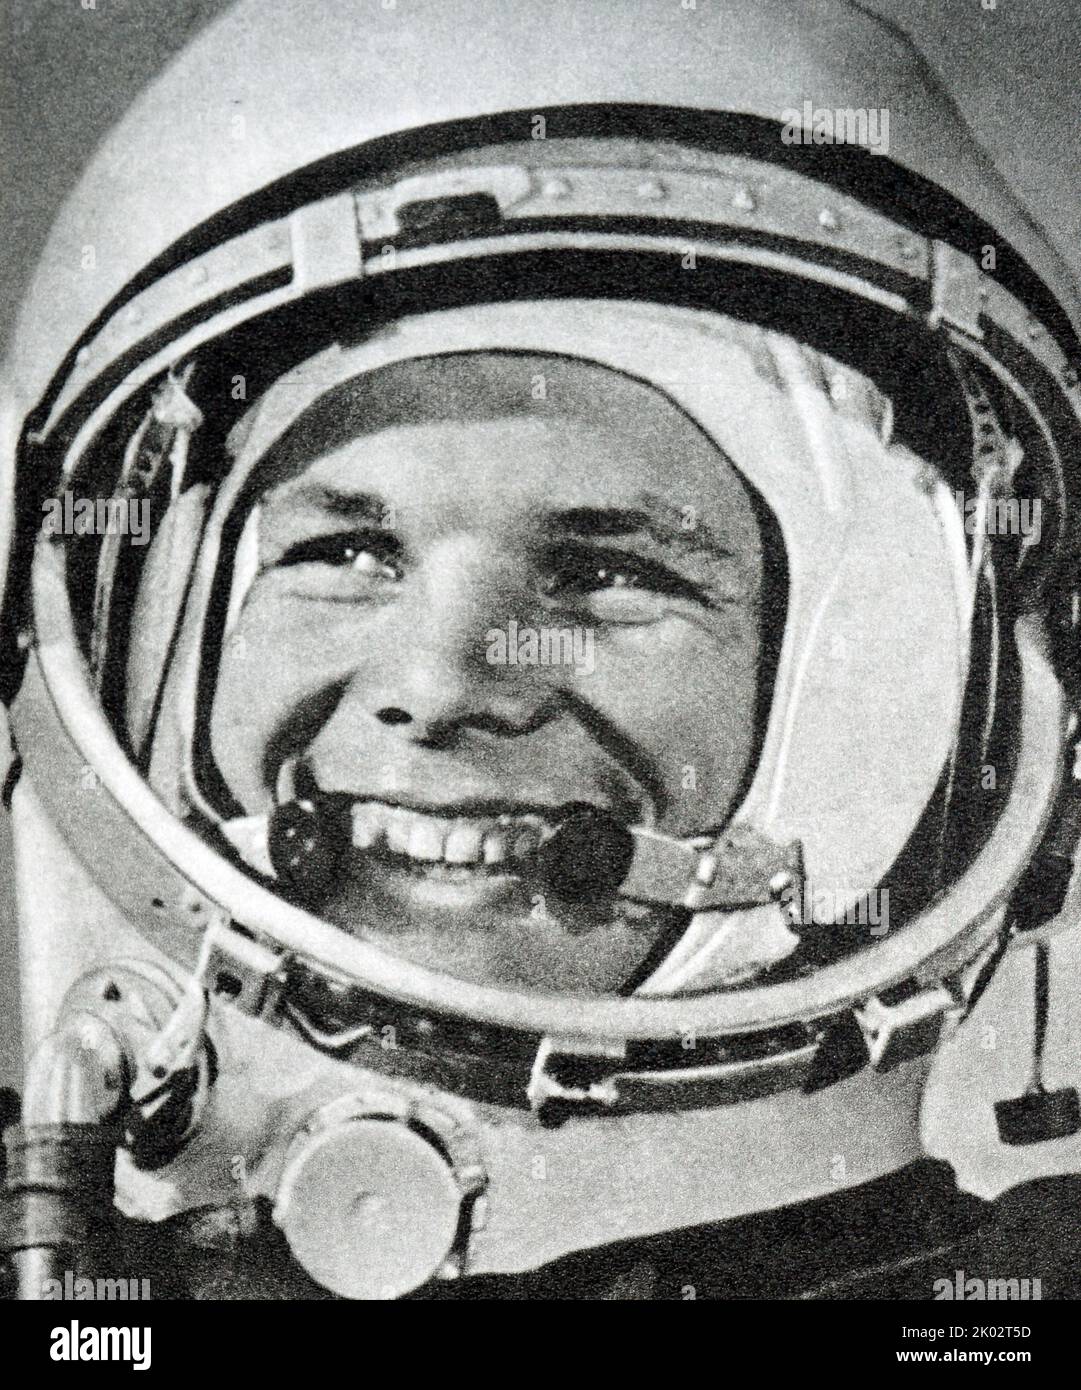 Juri Gagarin war Pilot und Kosmonaut der sowjetischen Luftstreitkräfte, der als erster Mensch in den Weltraum kam und einen wichtigen Meilenstein im Weltraumrennen erreichte; seine Kapsel, Wostok 1, vollendete am 12. April 1961 eine Umlaufbahn der Erde. Gagarin wurde zu einer internationalen Berühmtheit und erhielt viele Medaillen und Titel, darunter der Held der Sowjetunion, die höchste Ehre seiner Nation. Stockfoto